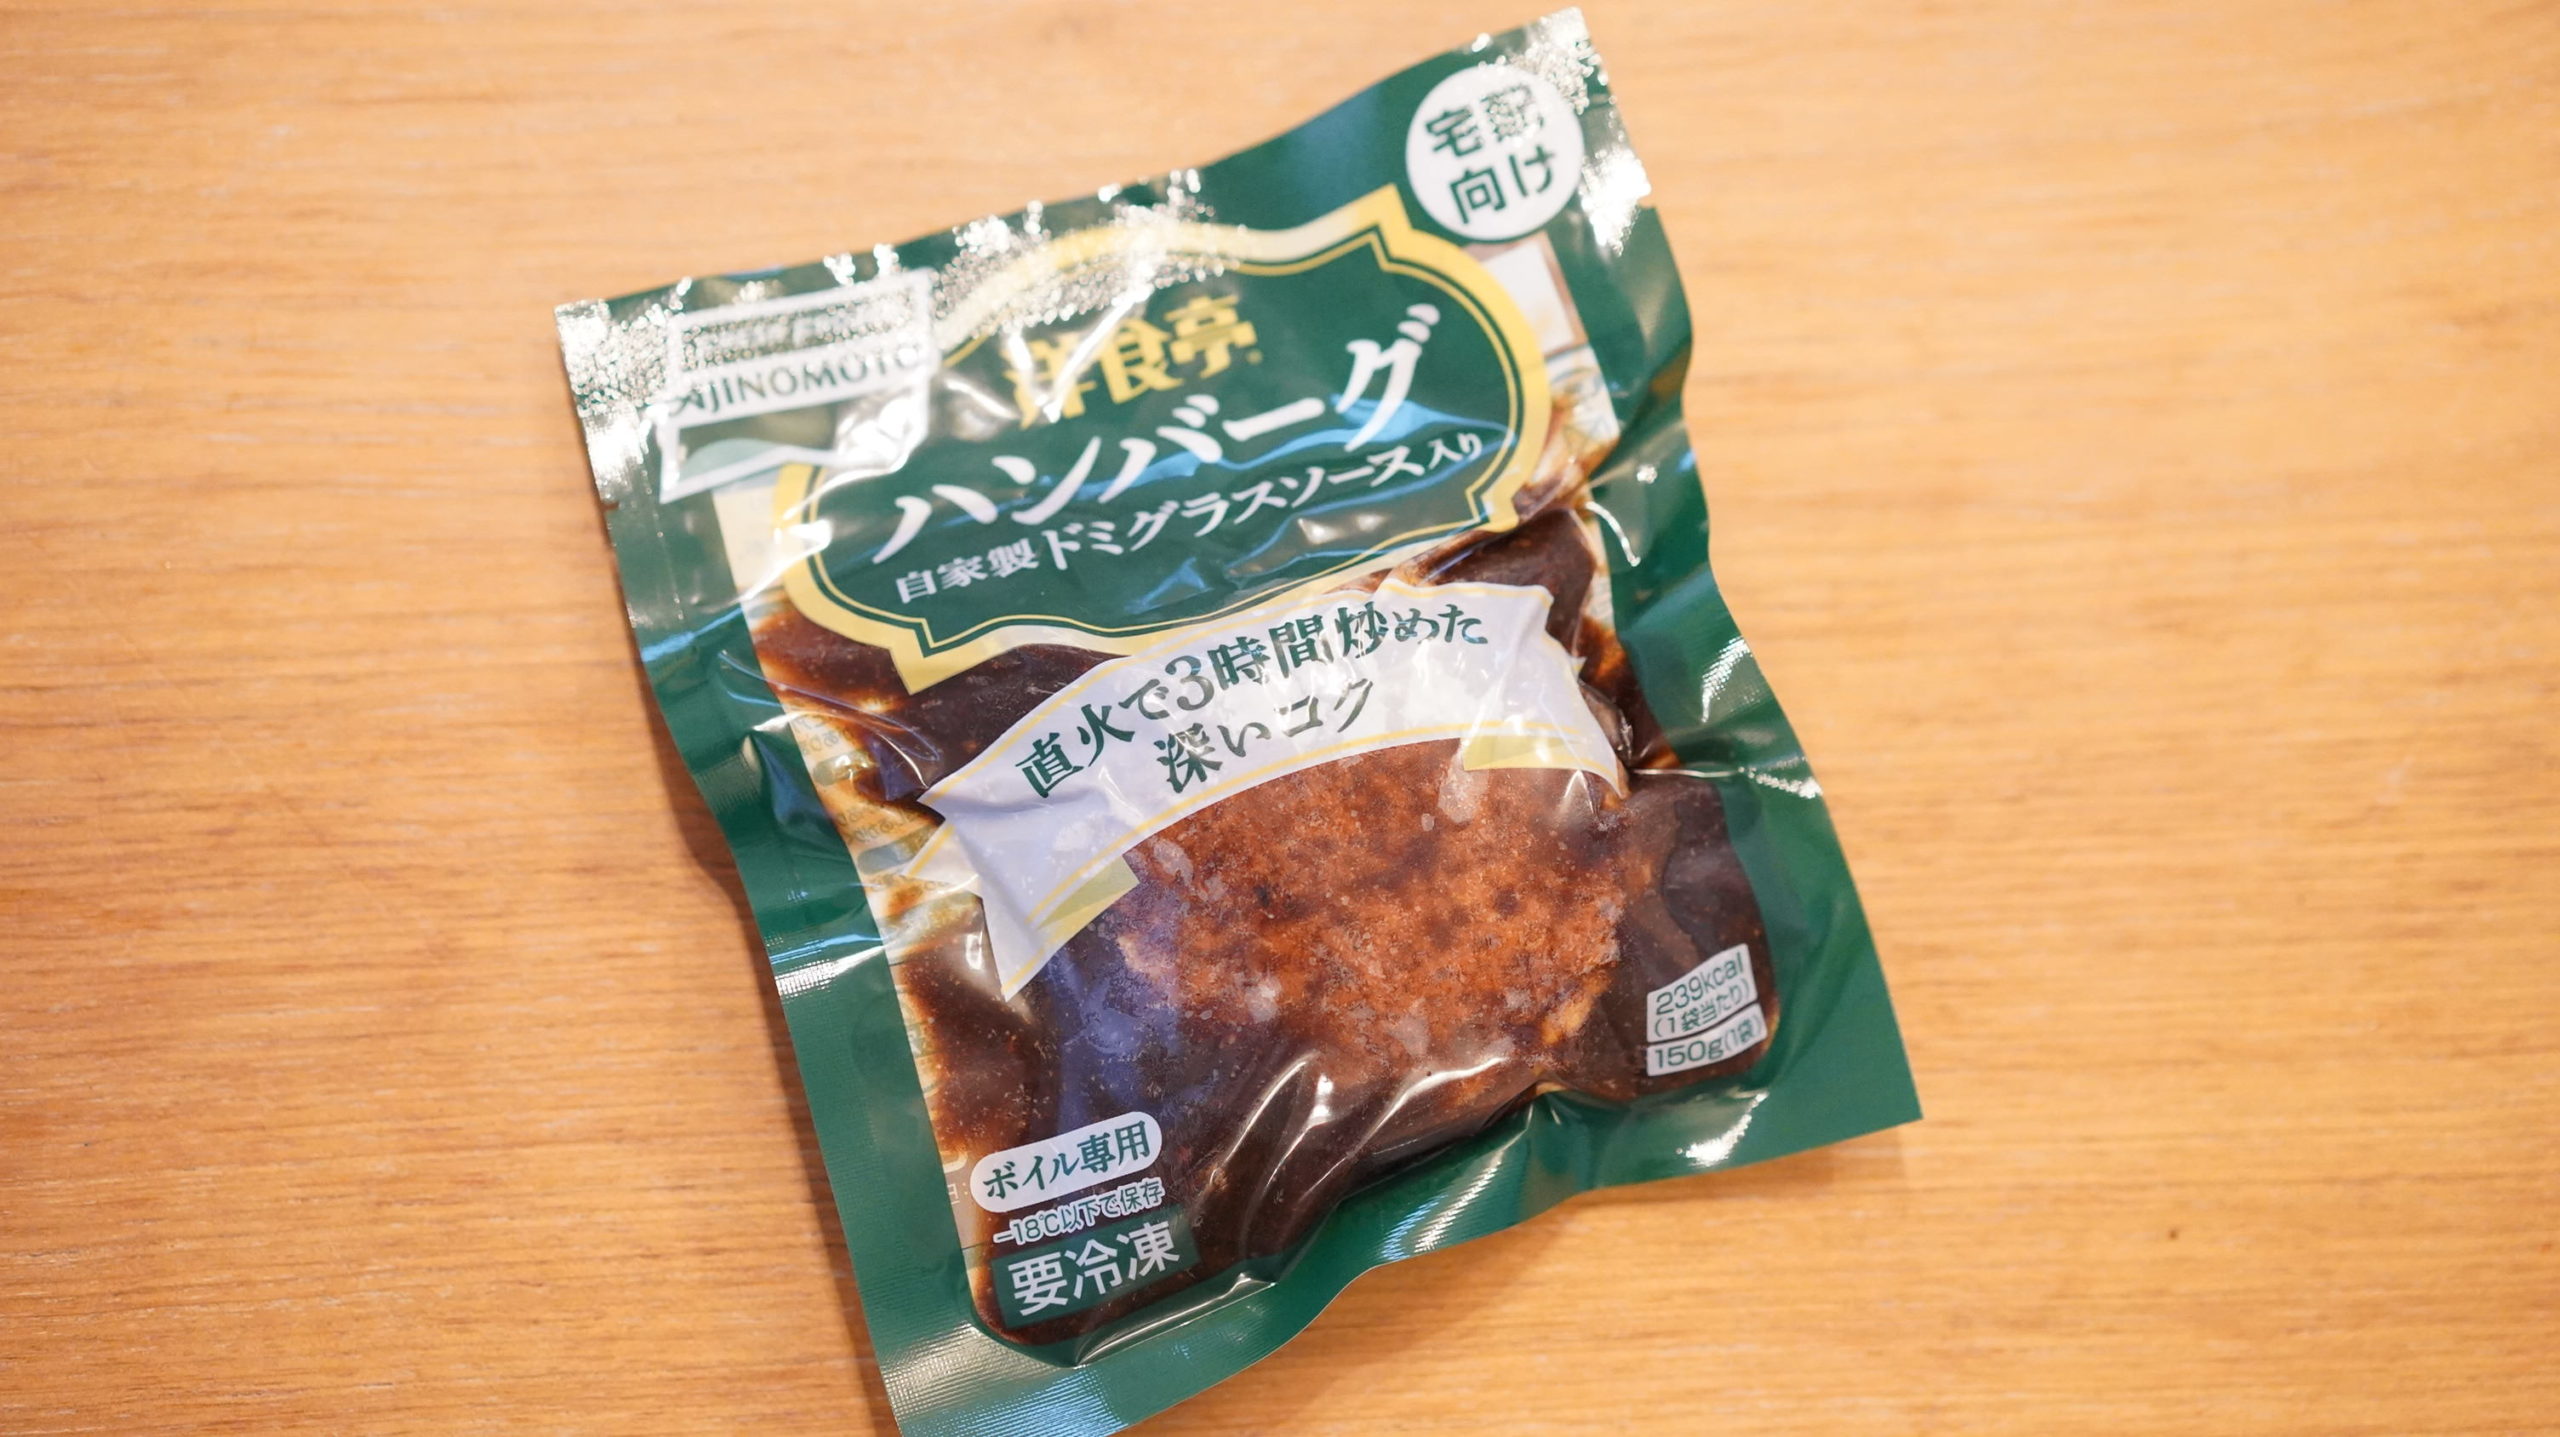 生協coop宅配の冷凍食品・ニチレイ「洋食亭ハンバーグ」のパッケージ写真